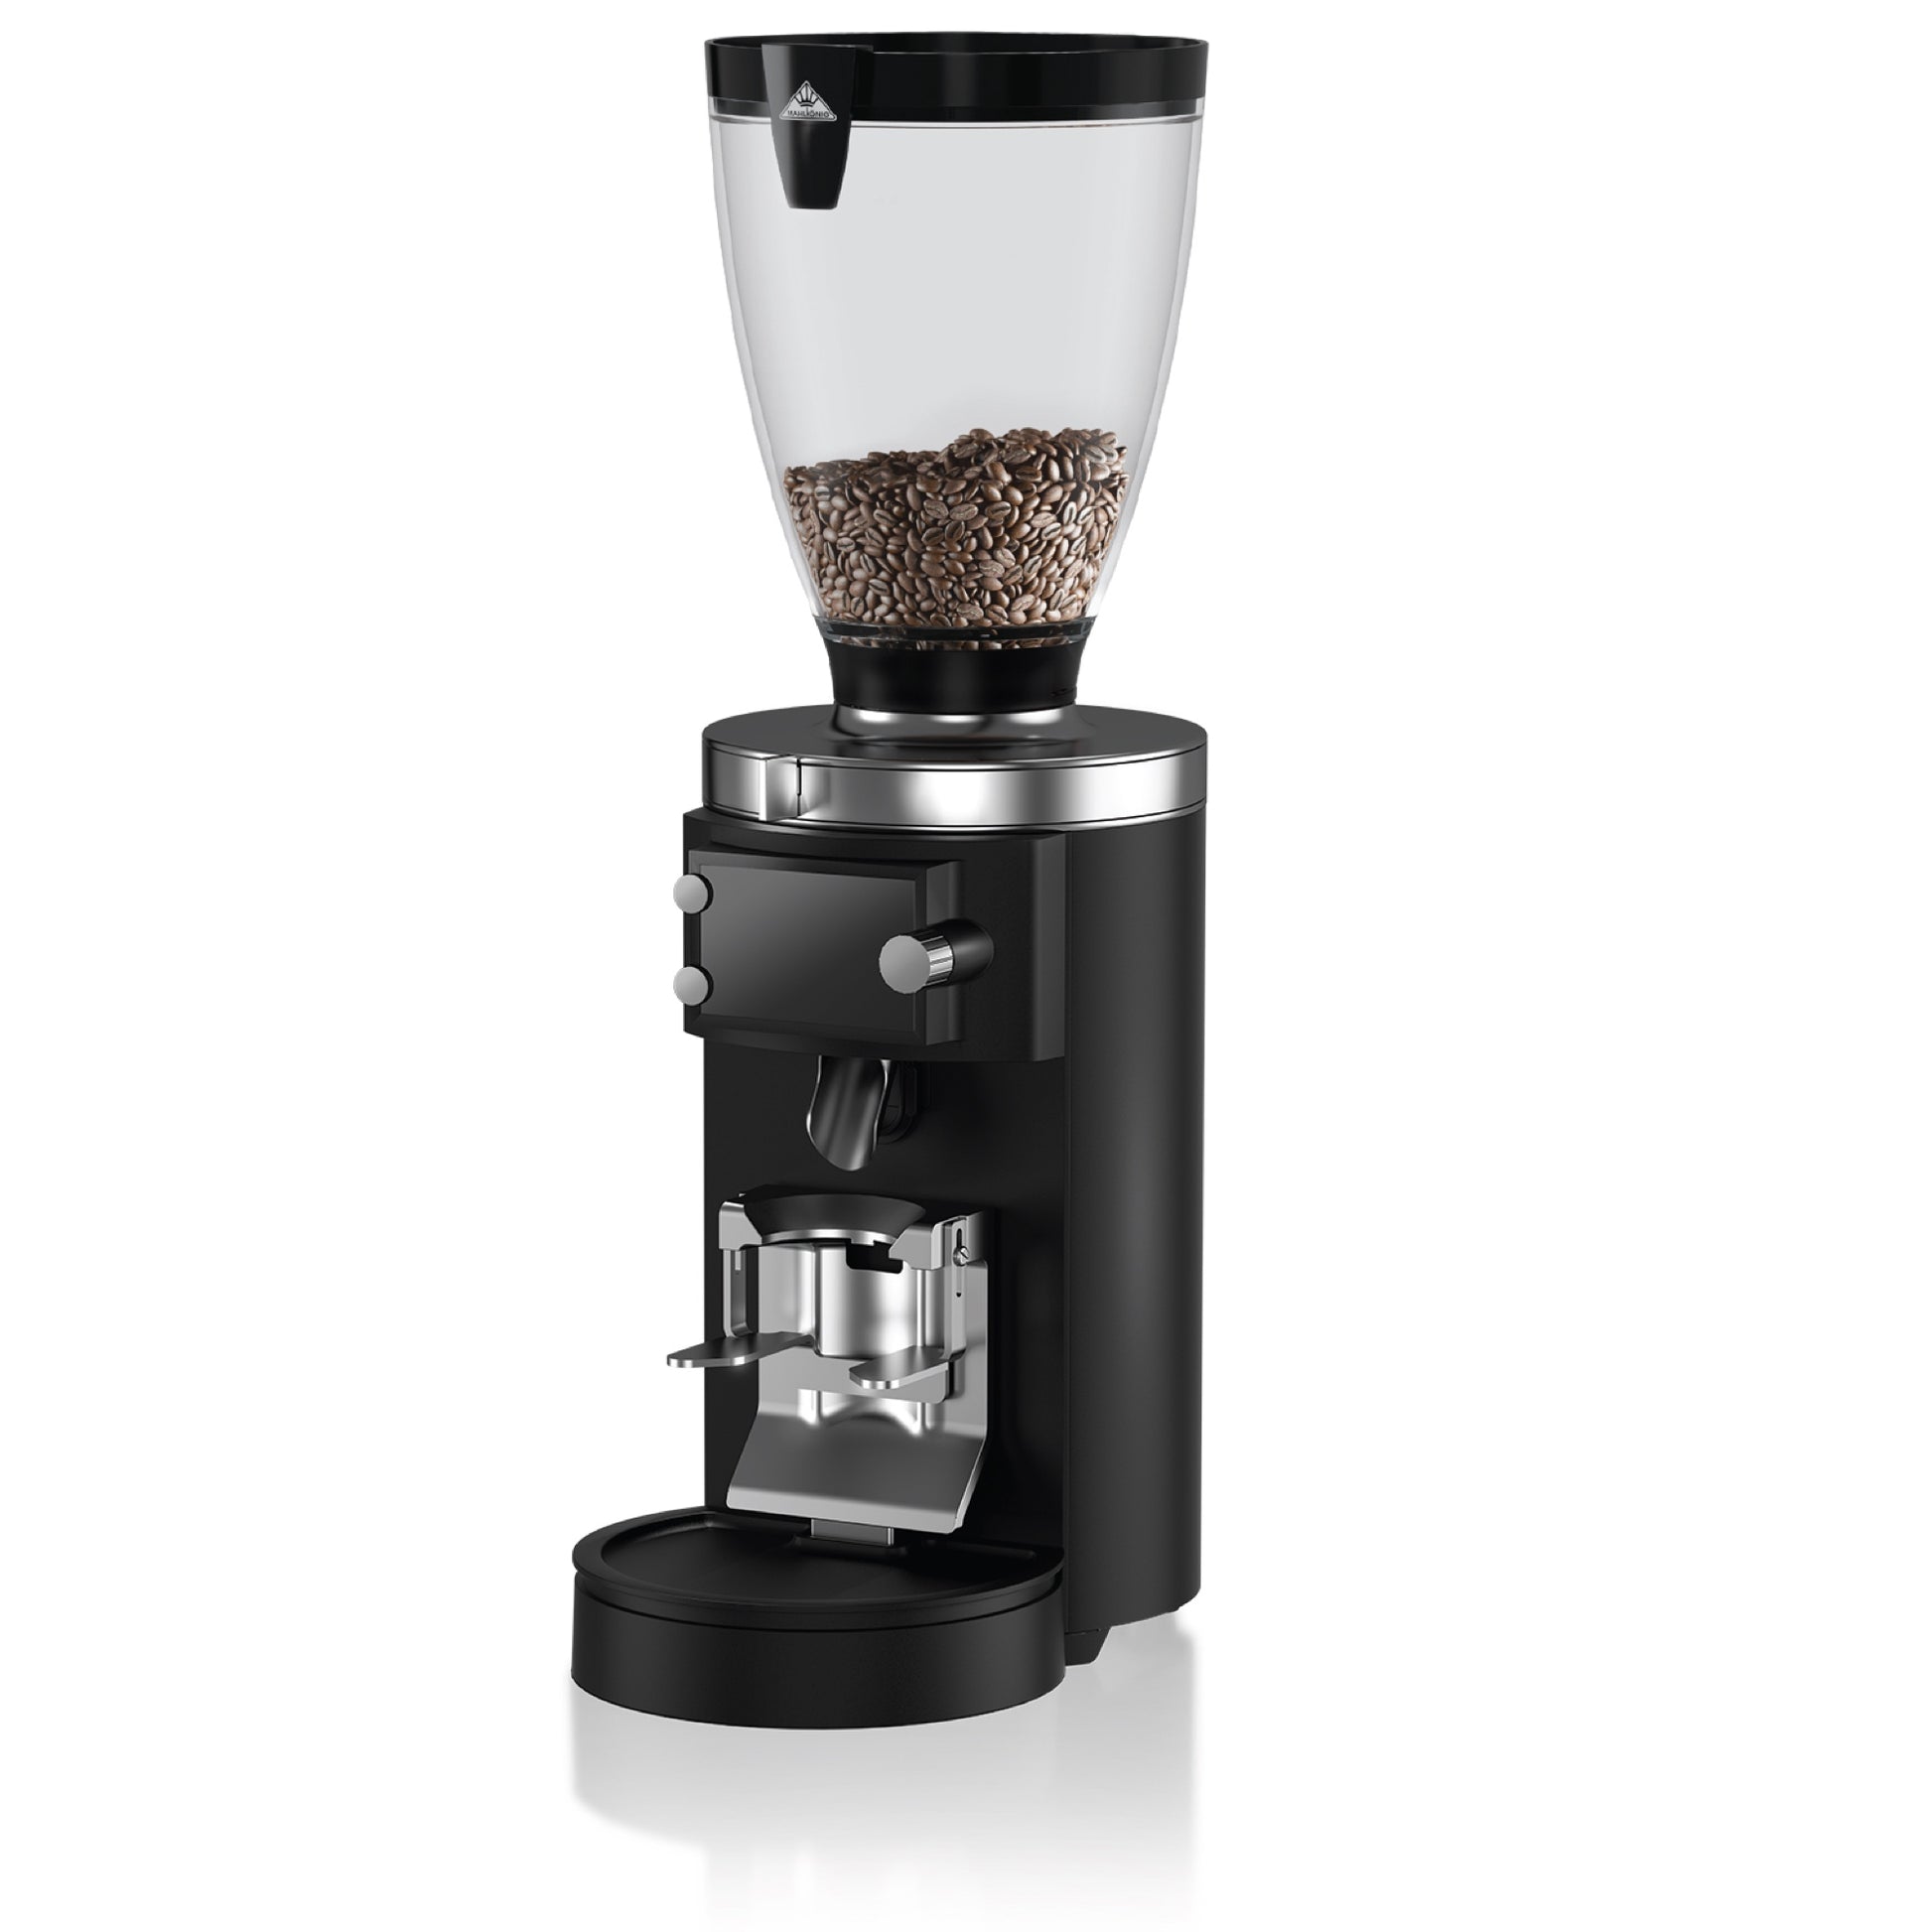 Mahlkonig Coffee grinder E65S GbW - Gigi-grinder